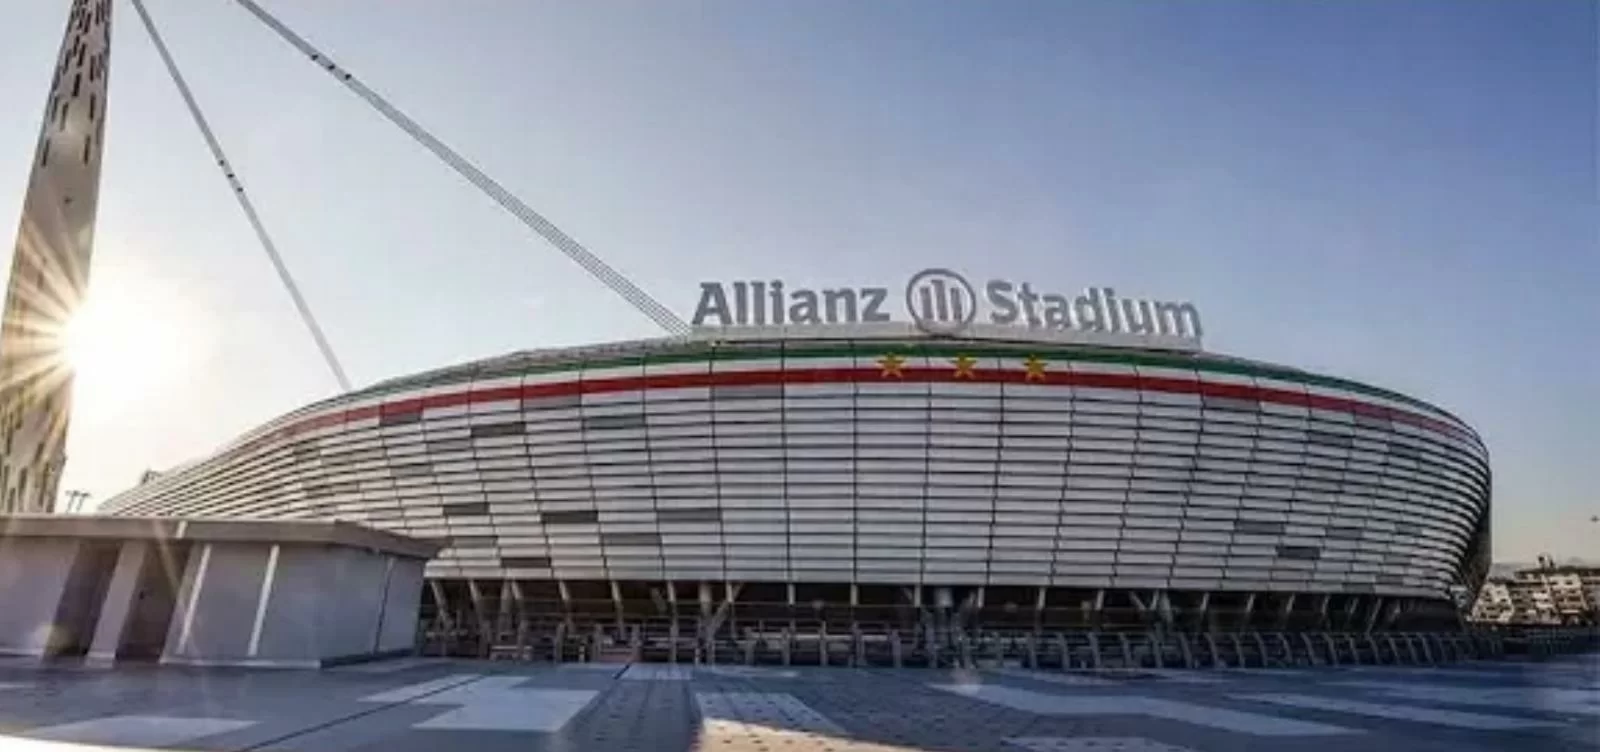 Juventus decima nella classifica dei naming rights degli stadi